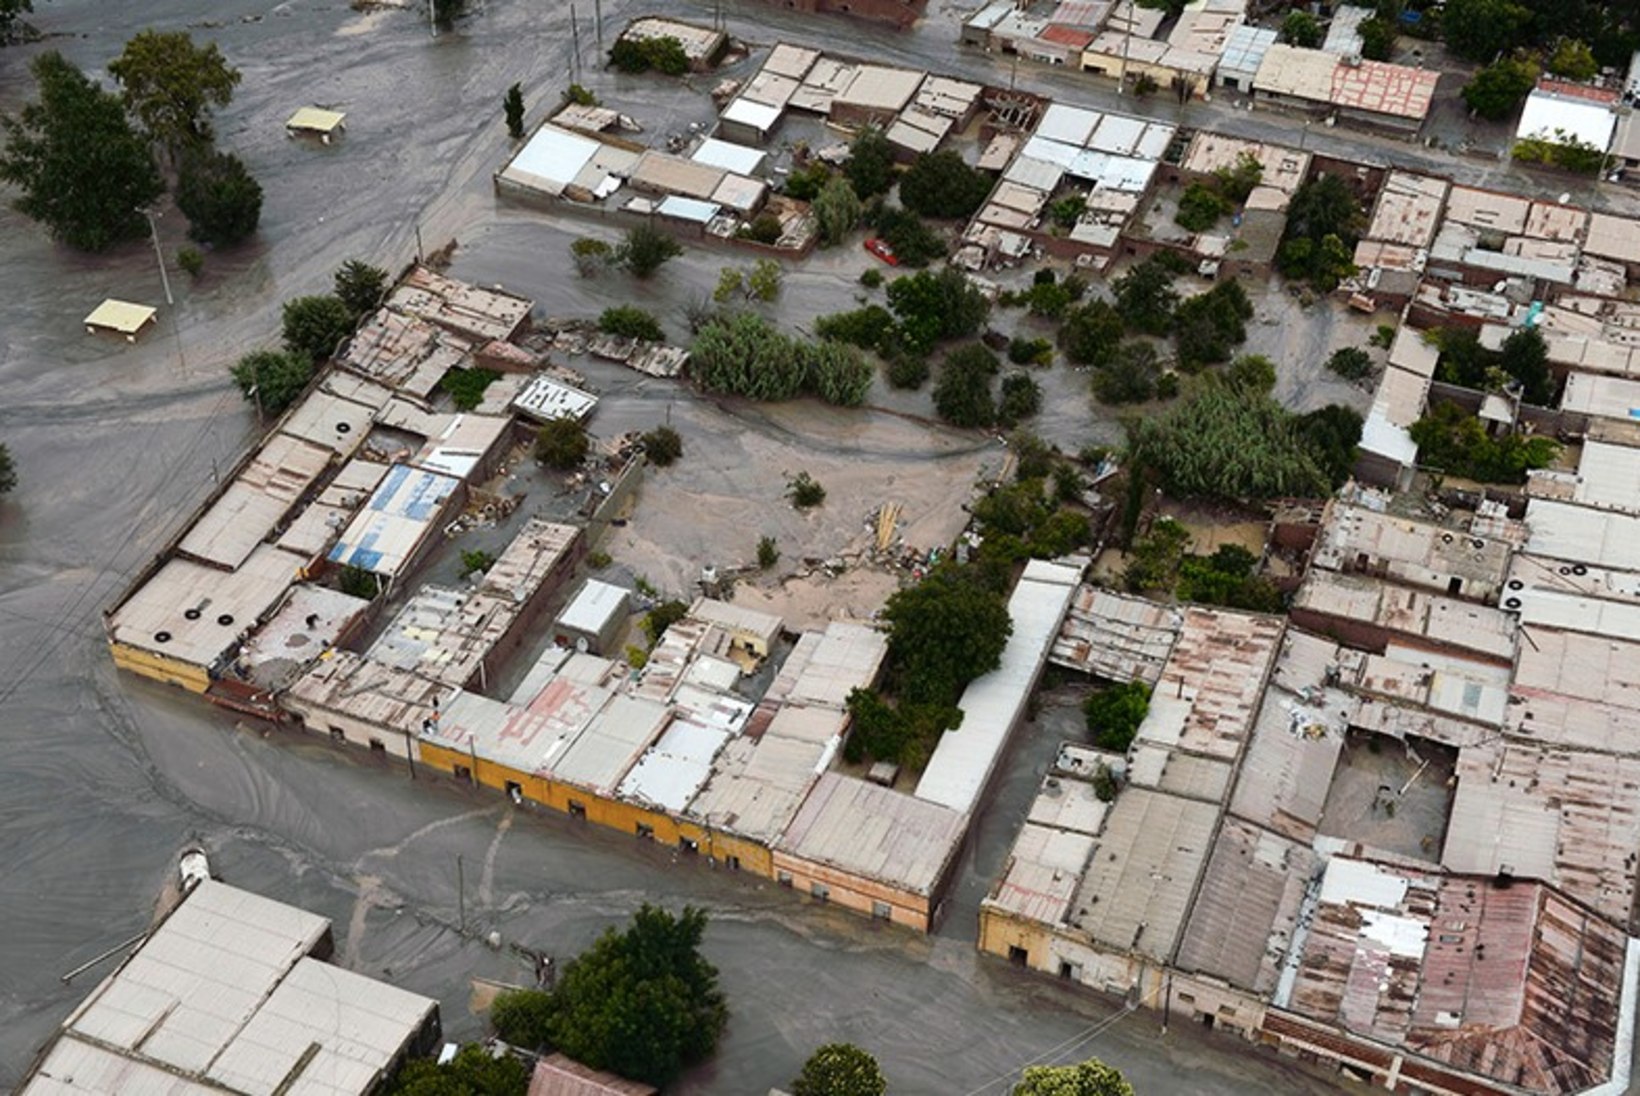 FOTOD | Lõuna-Ameerika viimaste aastakümnete suurimaid looduskatastroofe jättis Dakari ralli järjekordse katse ära